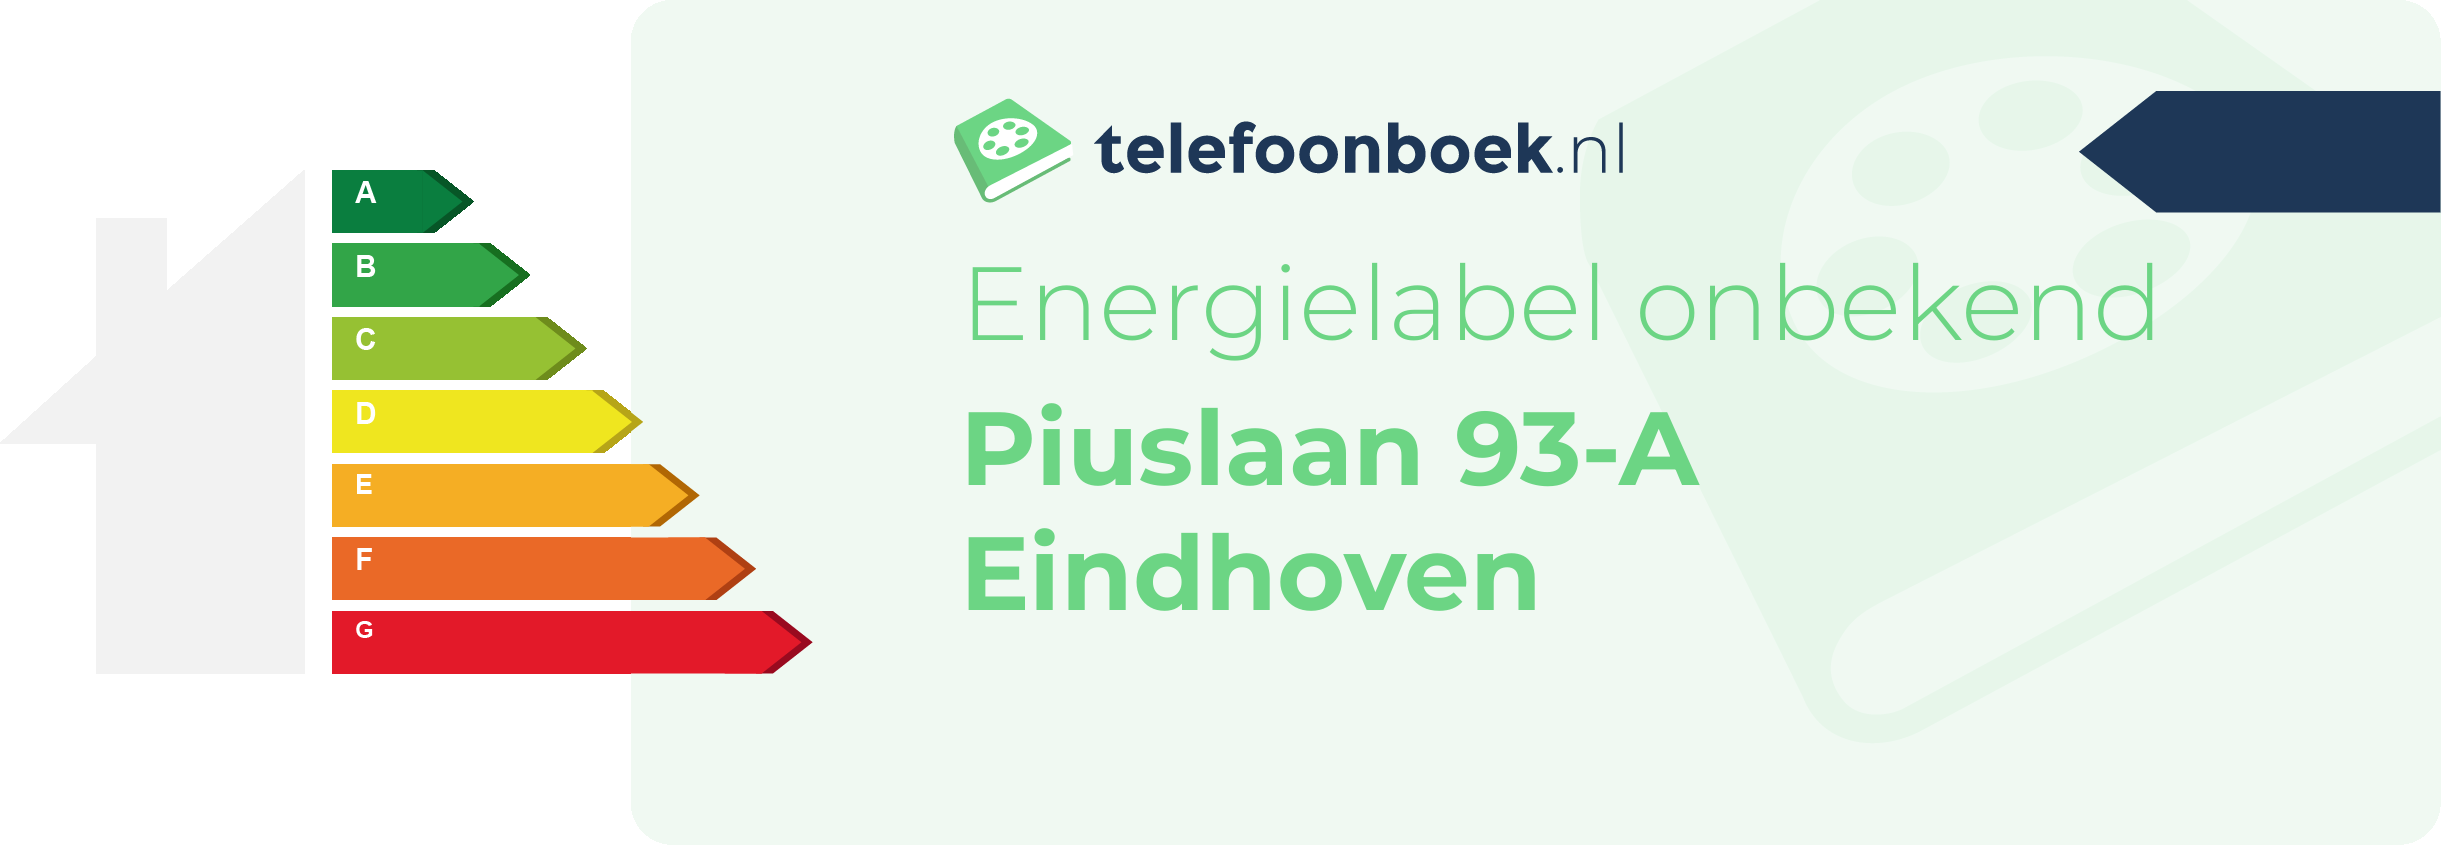 Energielabel Piuslaan 93-A Eindhoven